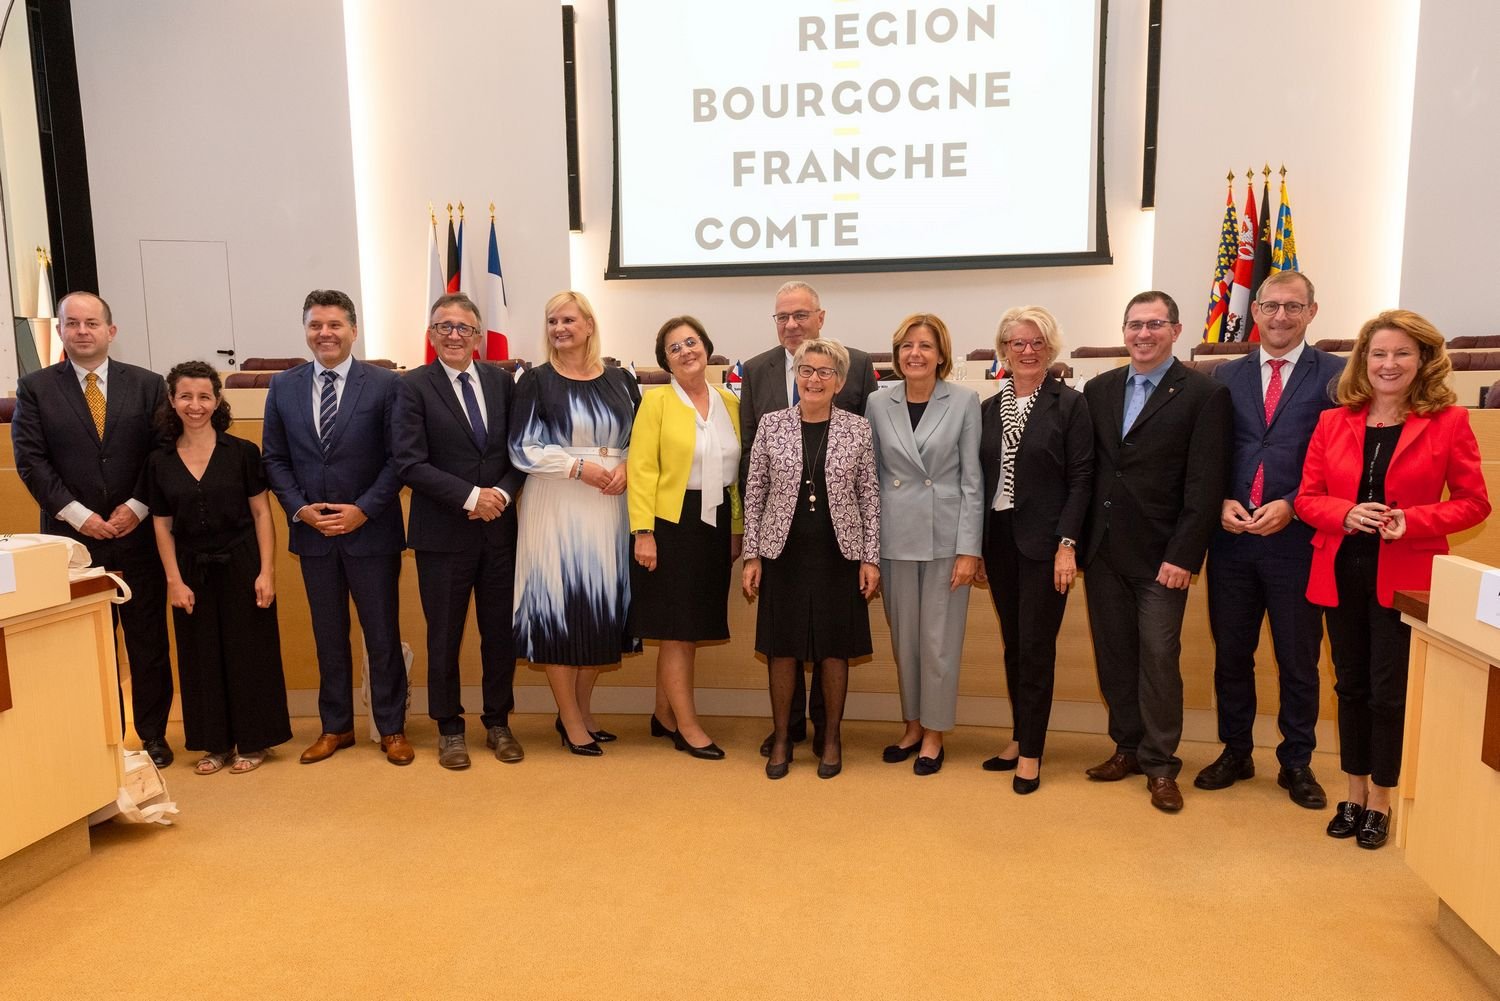 Burgundia-Franche-Comté: Region świętuje dwudziestą rocznicę Porozumienia Czterostronnego ze swoimi europejskimi partnerami